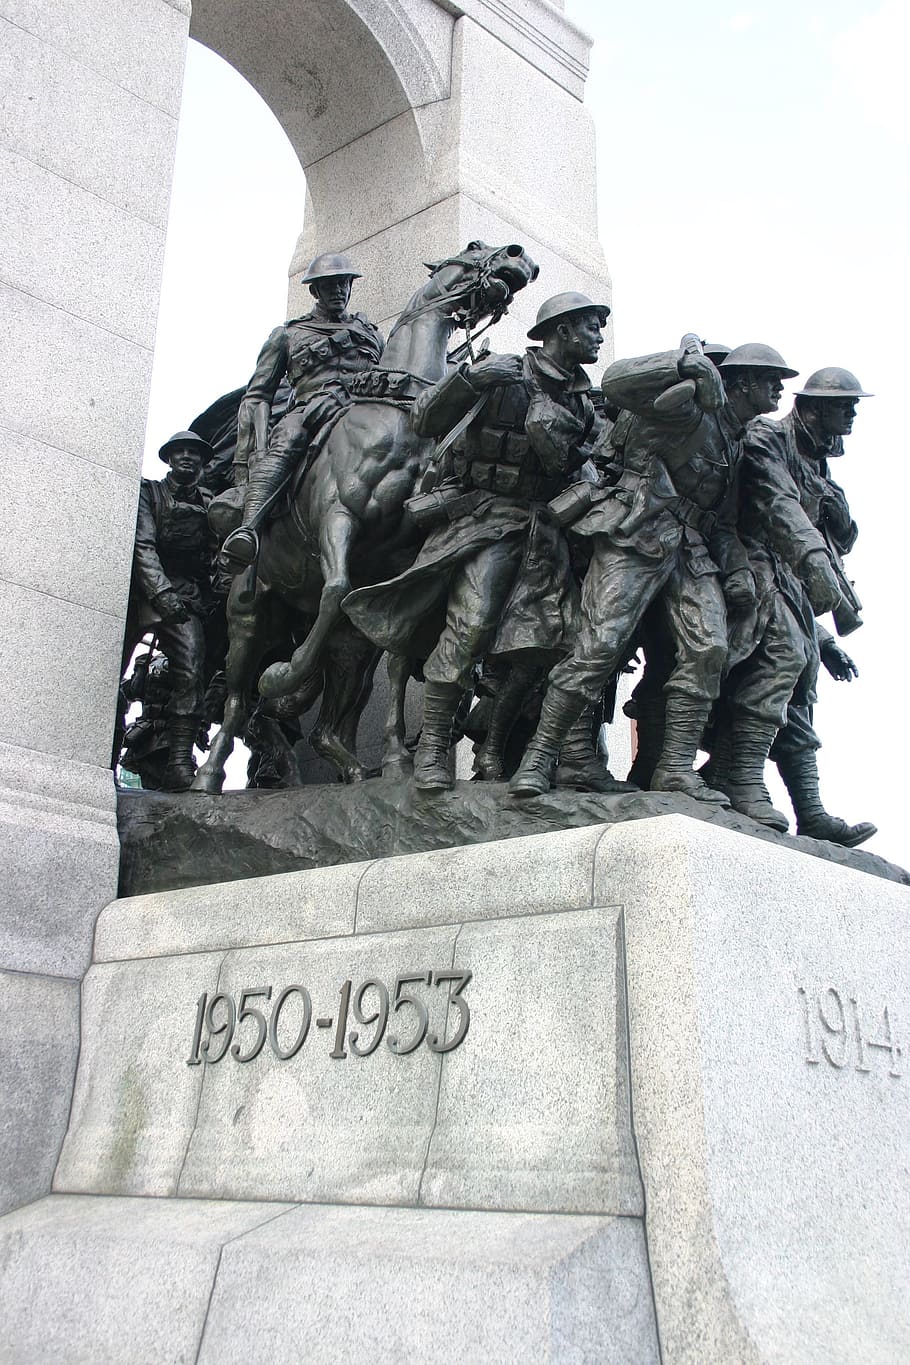 War Memorial, Monument, memorial, war, national, landmark, history, remembrance, remember, soldier